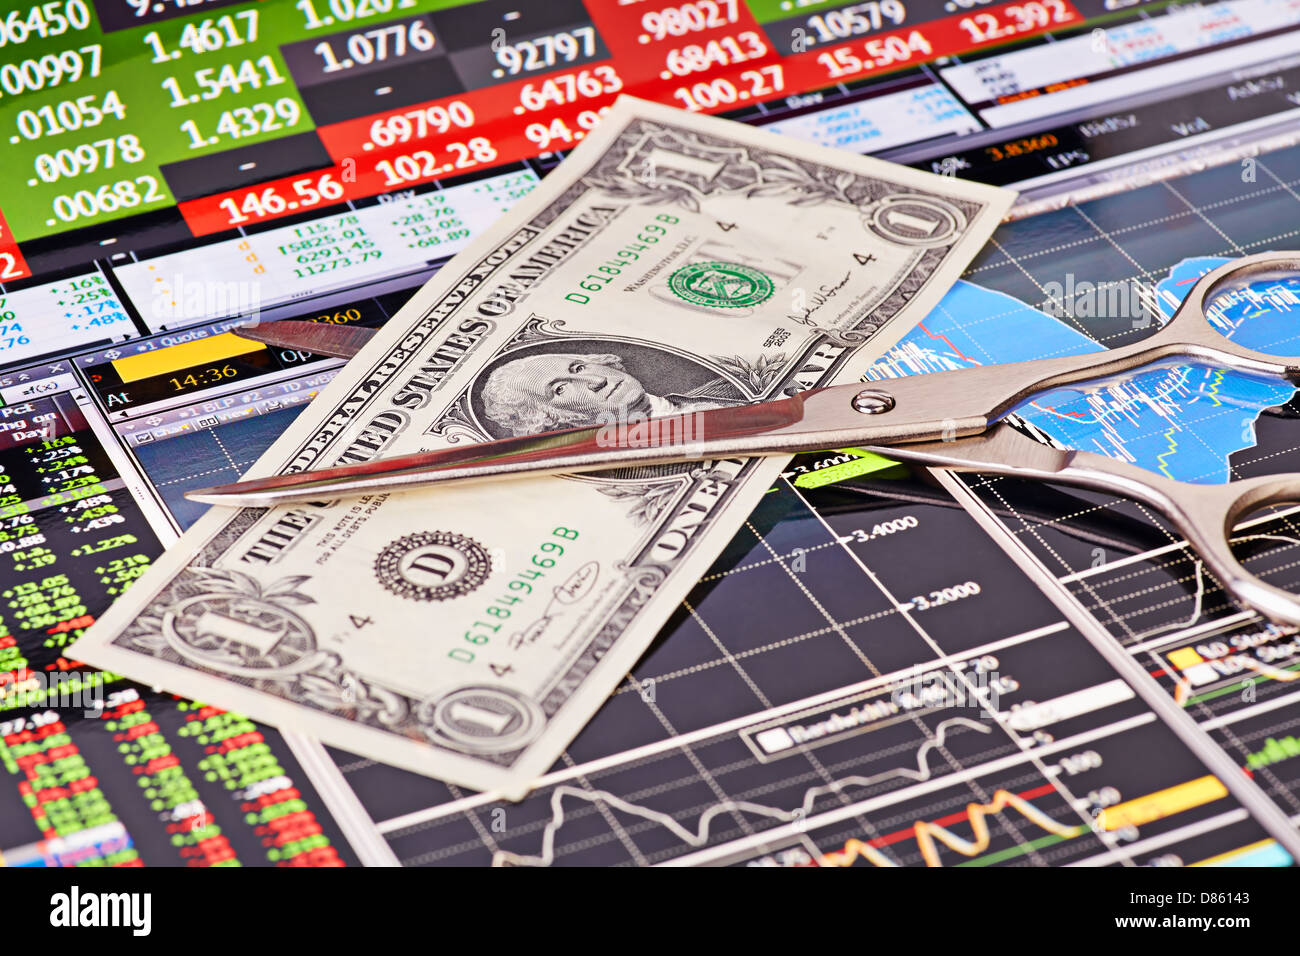 Il taglio a forbice una banconota del dollaro.i grafici finanziari e le colonne dei prezzi come sfondo Foto Stock